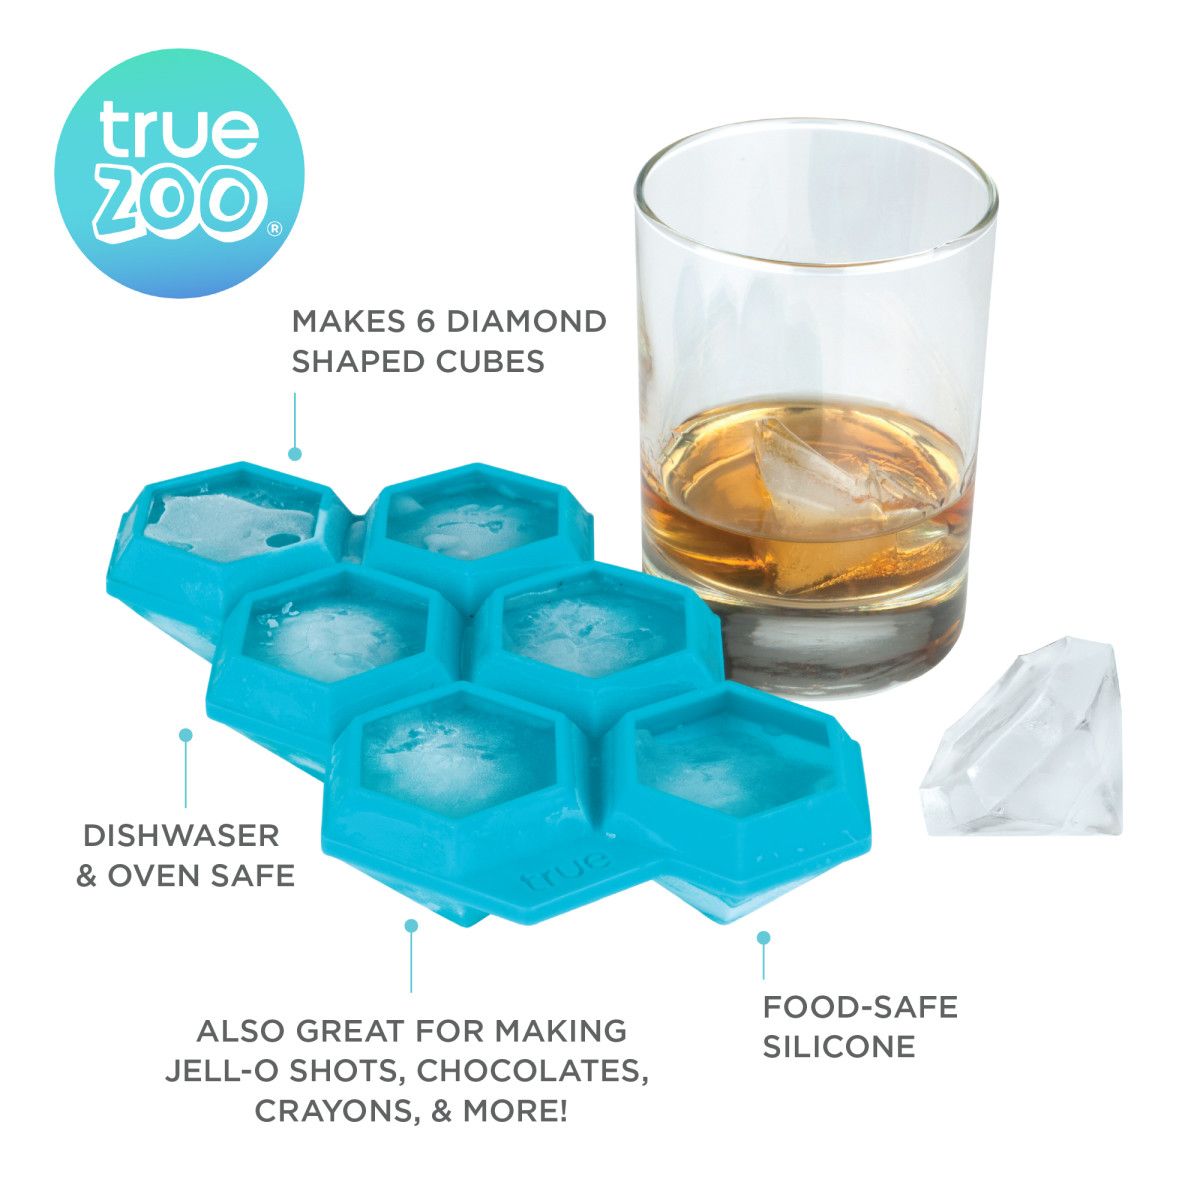 True Zoo Baseball Ice Mold, Silicone Ice Sphere Mold, Novelty Ice Maker,  Set of 1, White, Dishwasher Safe, Ice Cube Tray